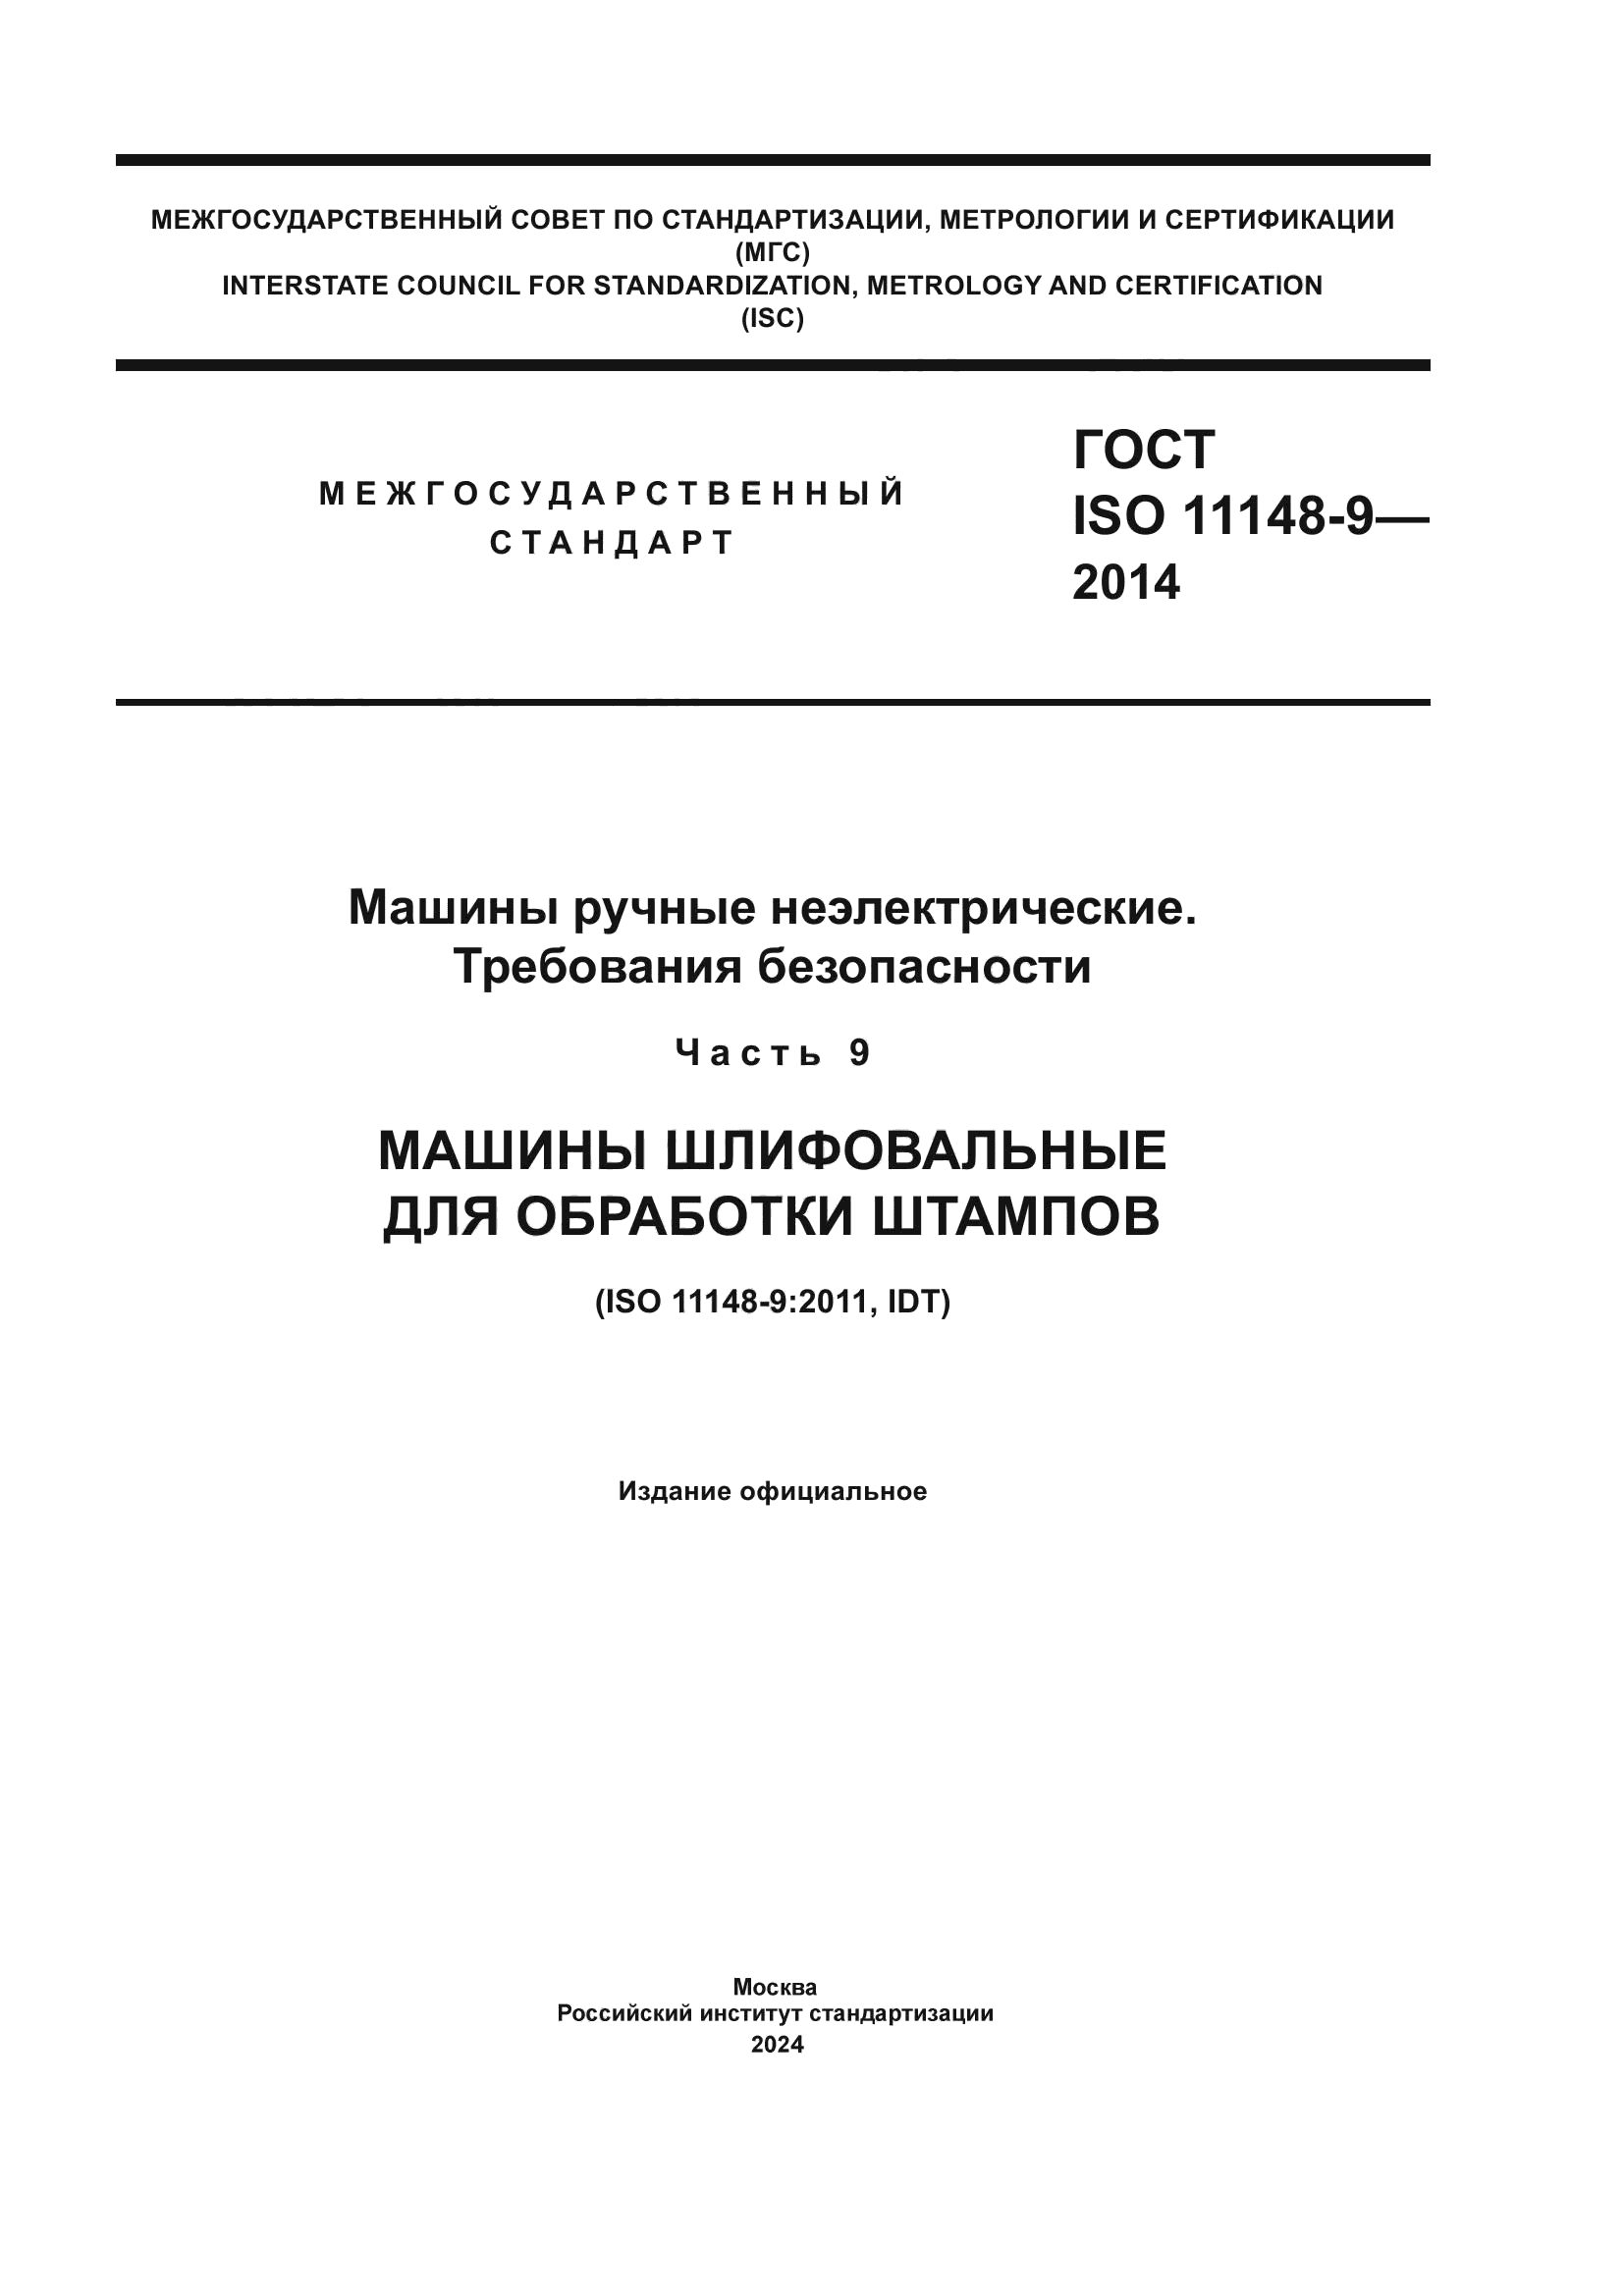 ГОСТ ISO 11148-9-2014